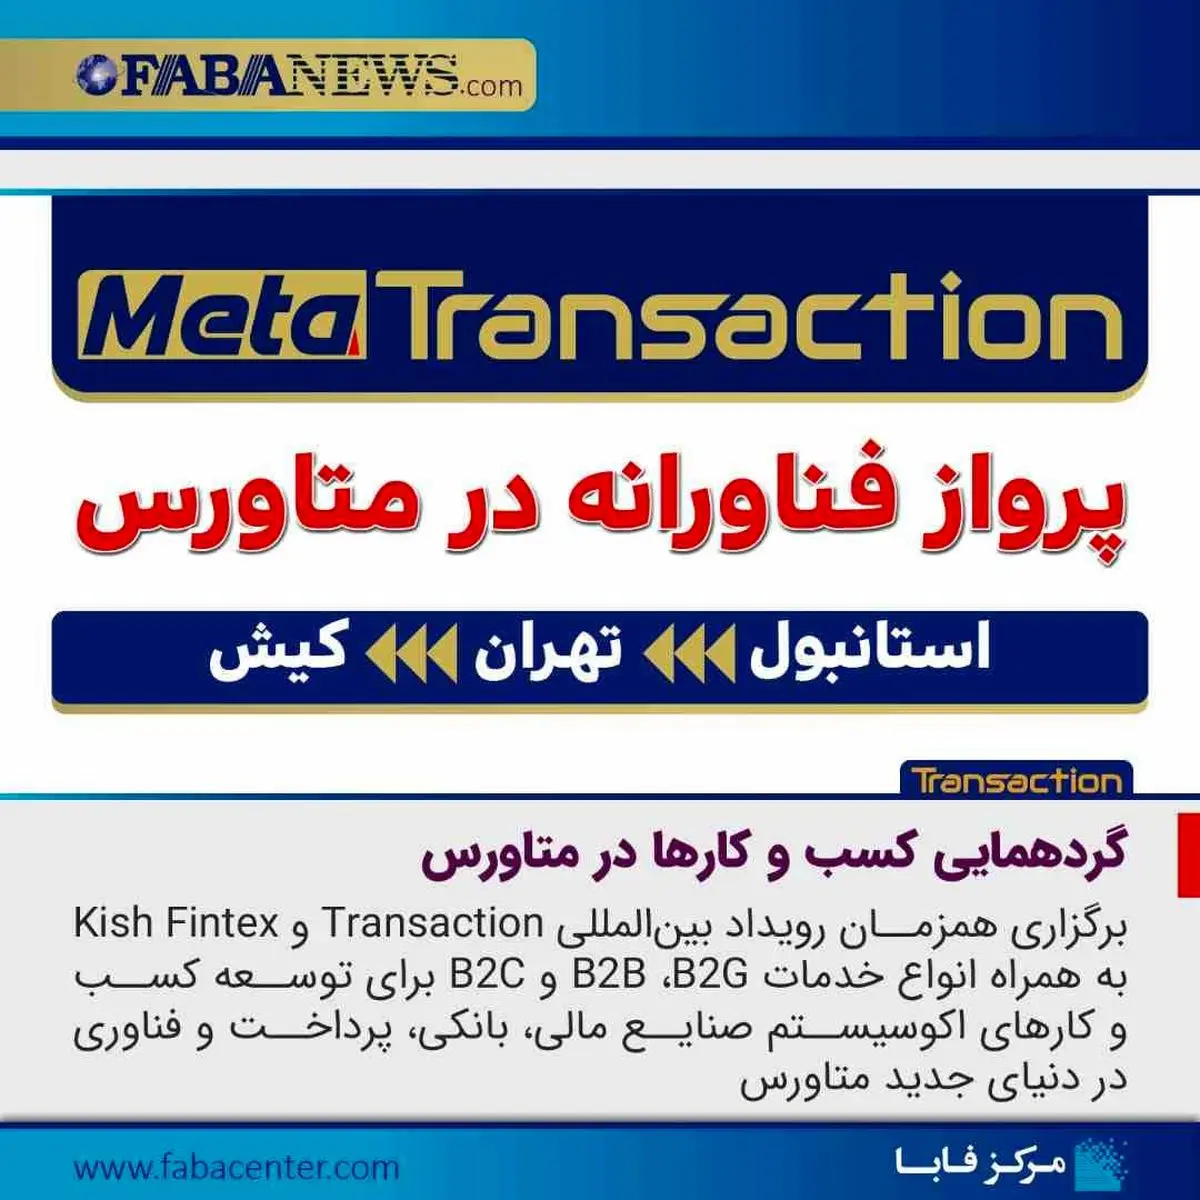 هشتمین نمایشگاه تراکنش ایران (Transaction 2022) آذرماه 1401 برگزار می شود